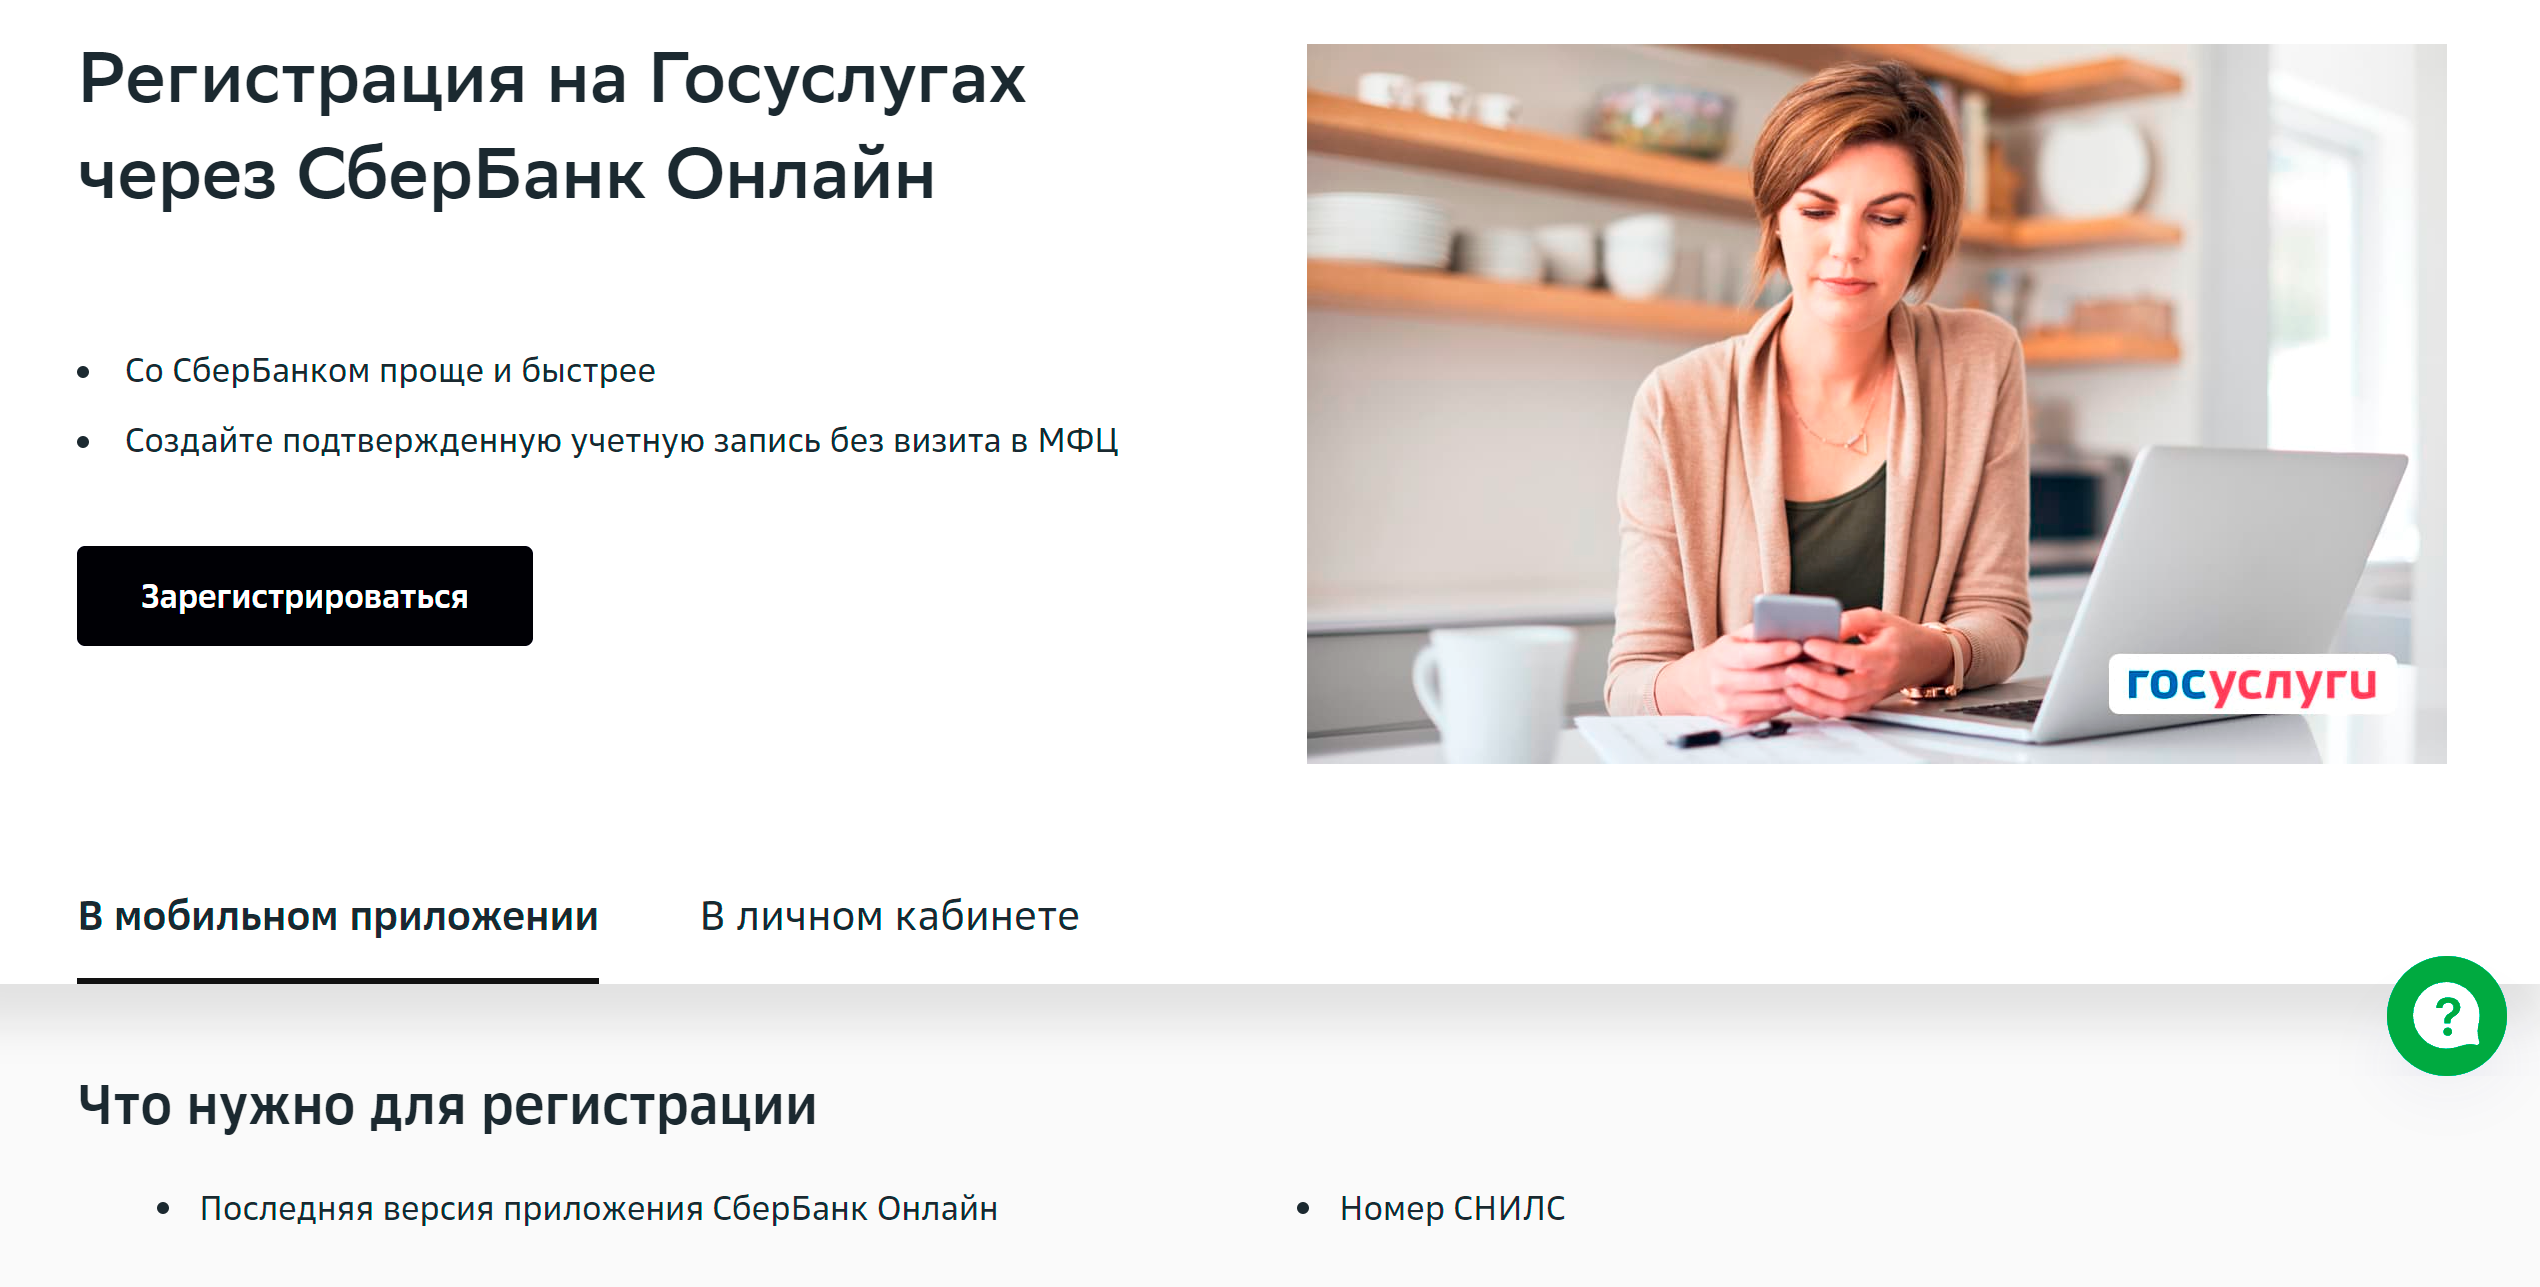 На сайте Сбербанка есть подробная инструкция по подтверждению учетной записи на госуслугах. Источник: sberbank.ru